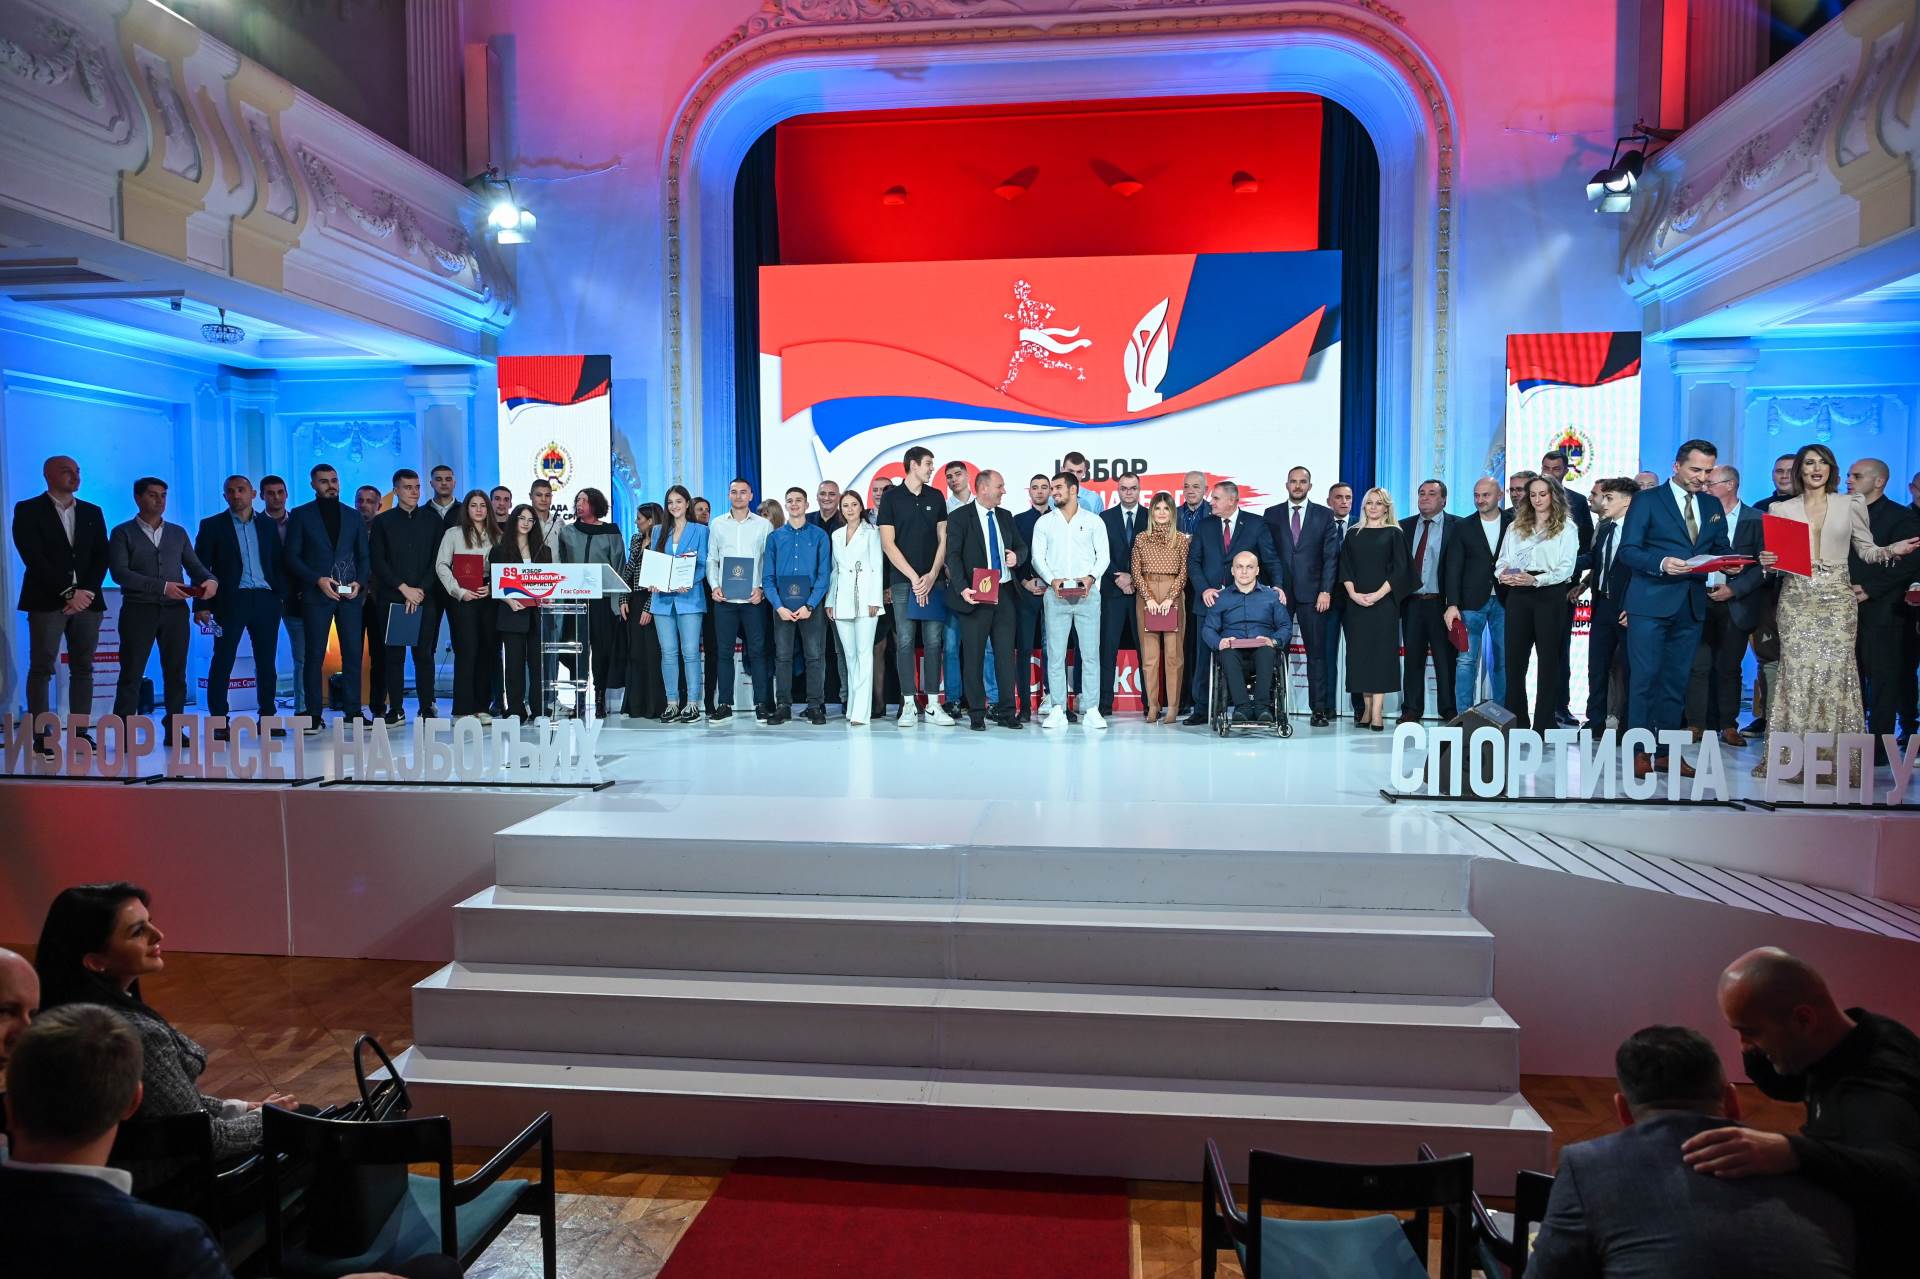  mtel, Glas Srpske, Izbor najboljeg sportiste 